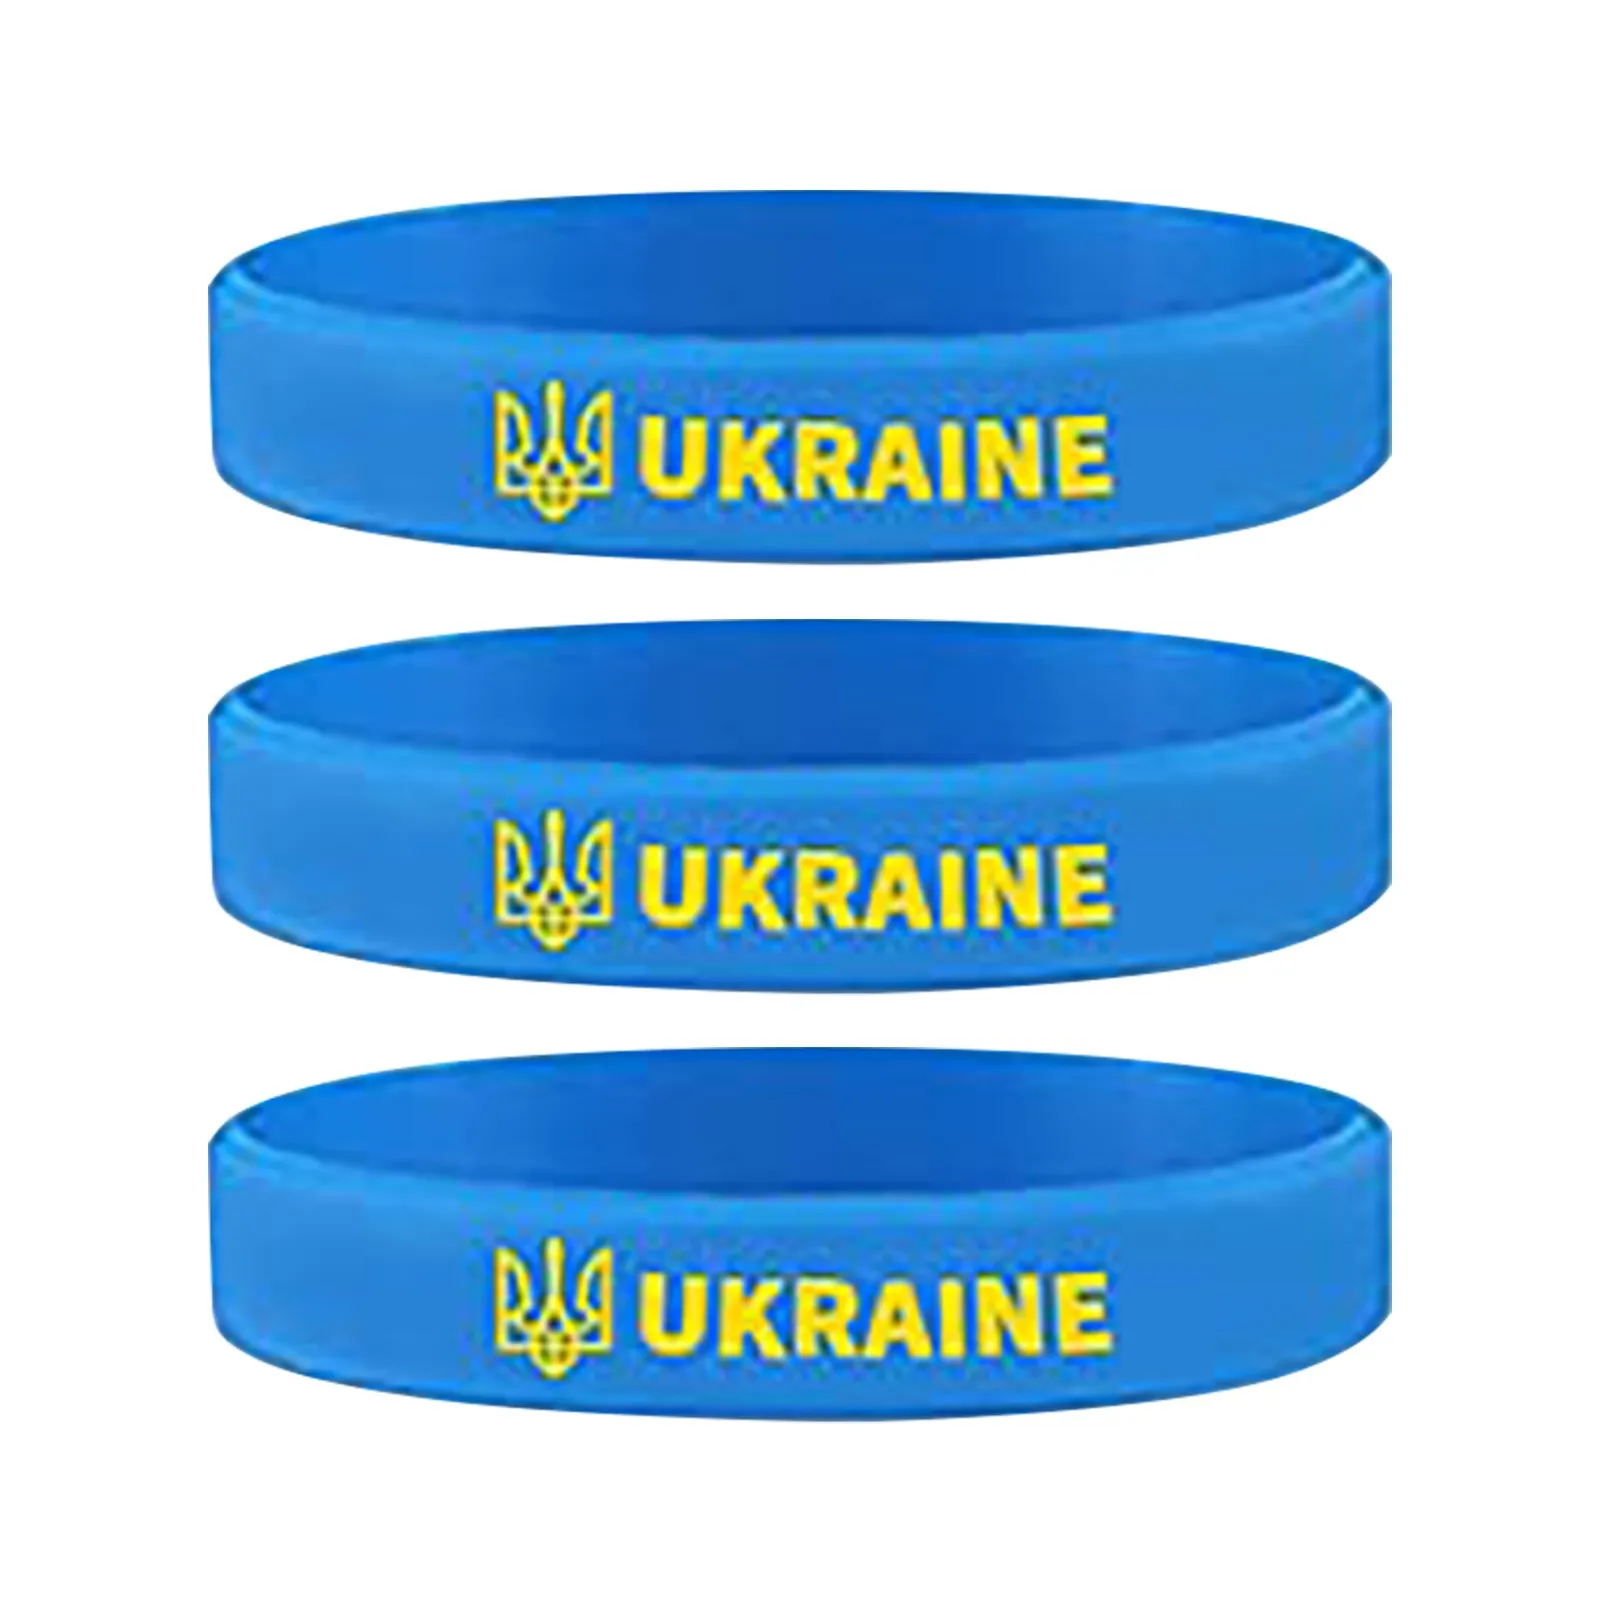 2PCS/Pack Ukraine flag Bracelet I Stand With Ukraine Patriotic Gift Ukrainian Rubber Wristband Ukrainian Gifts Fan Souvenirs Unisex 